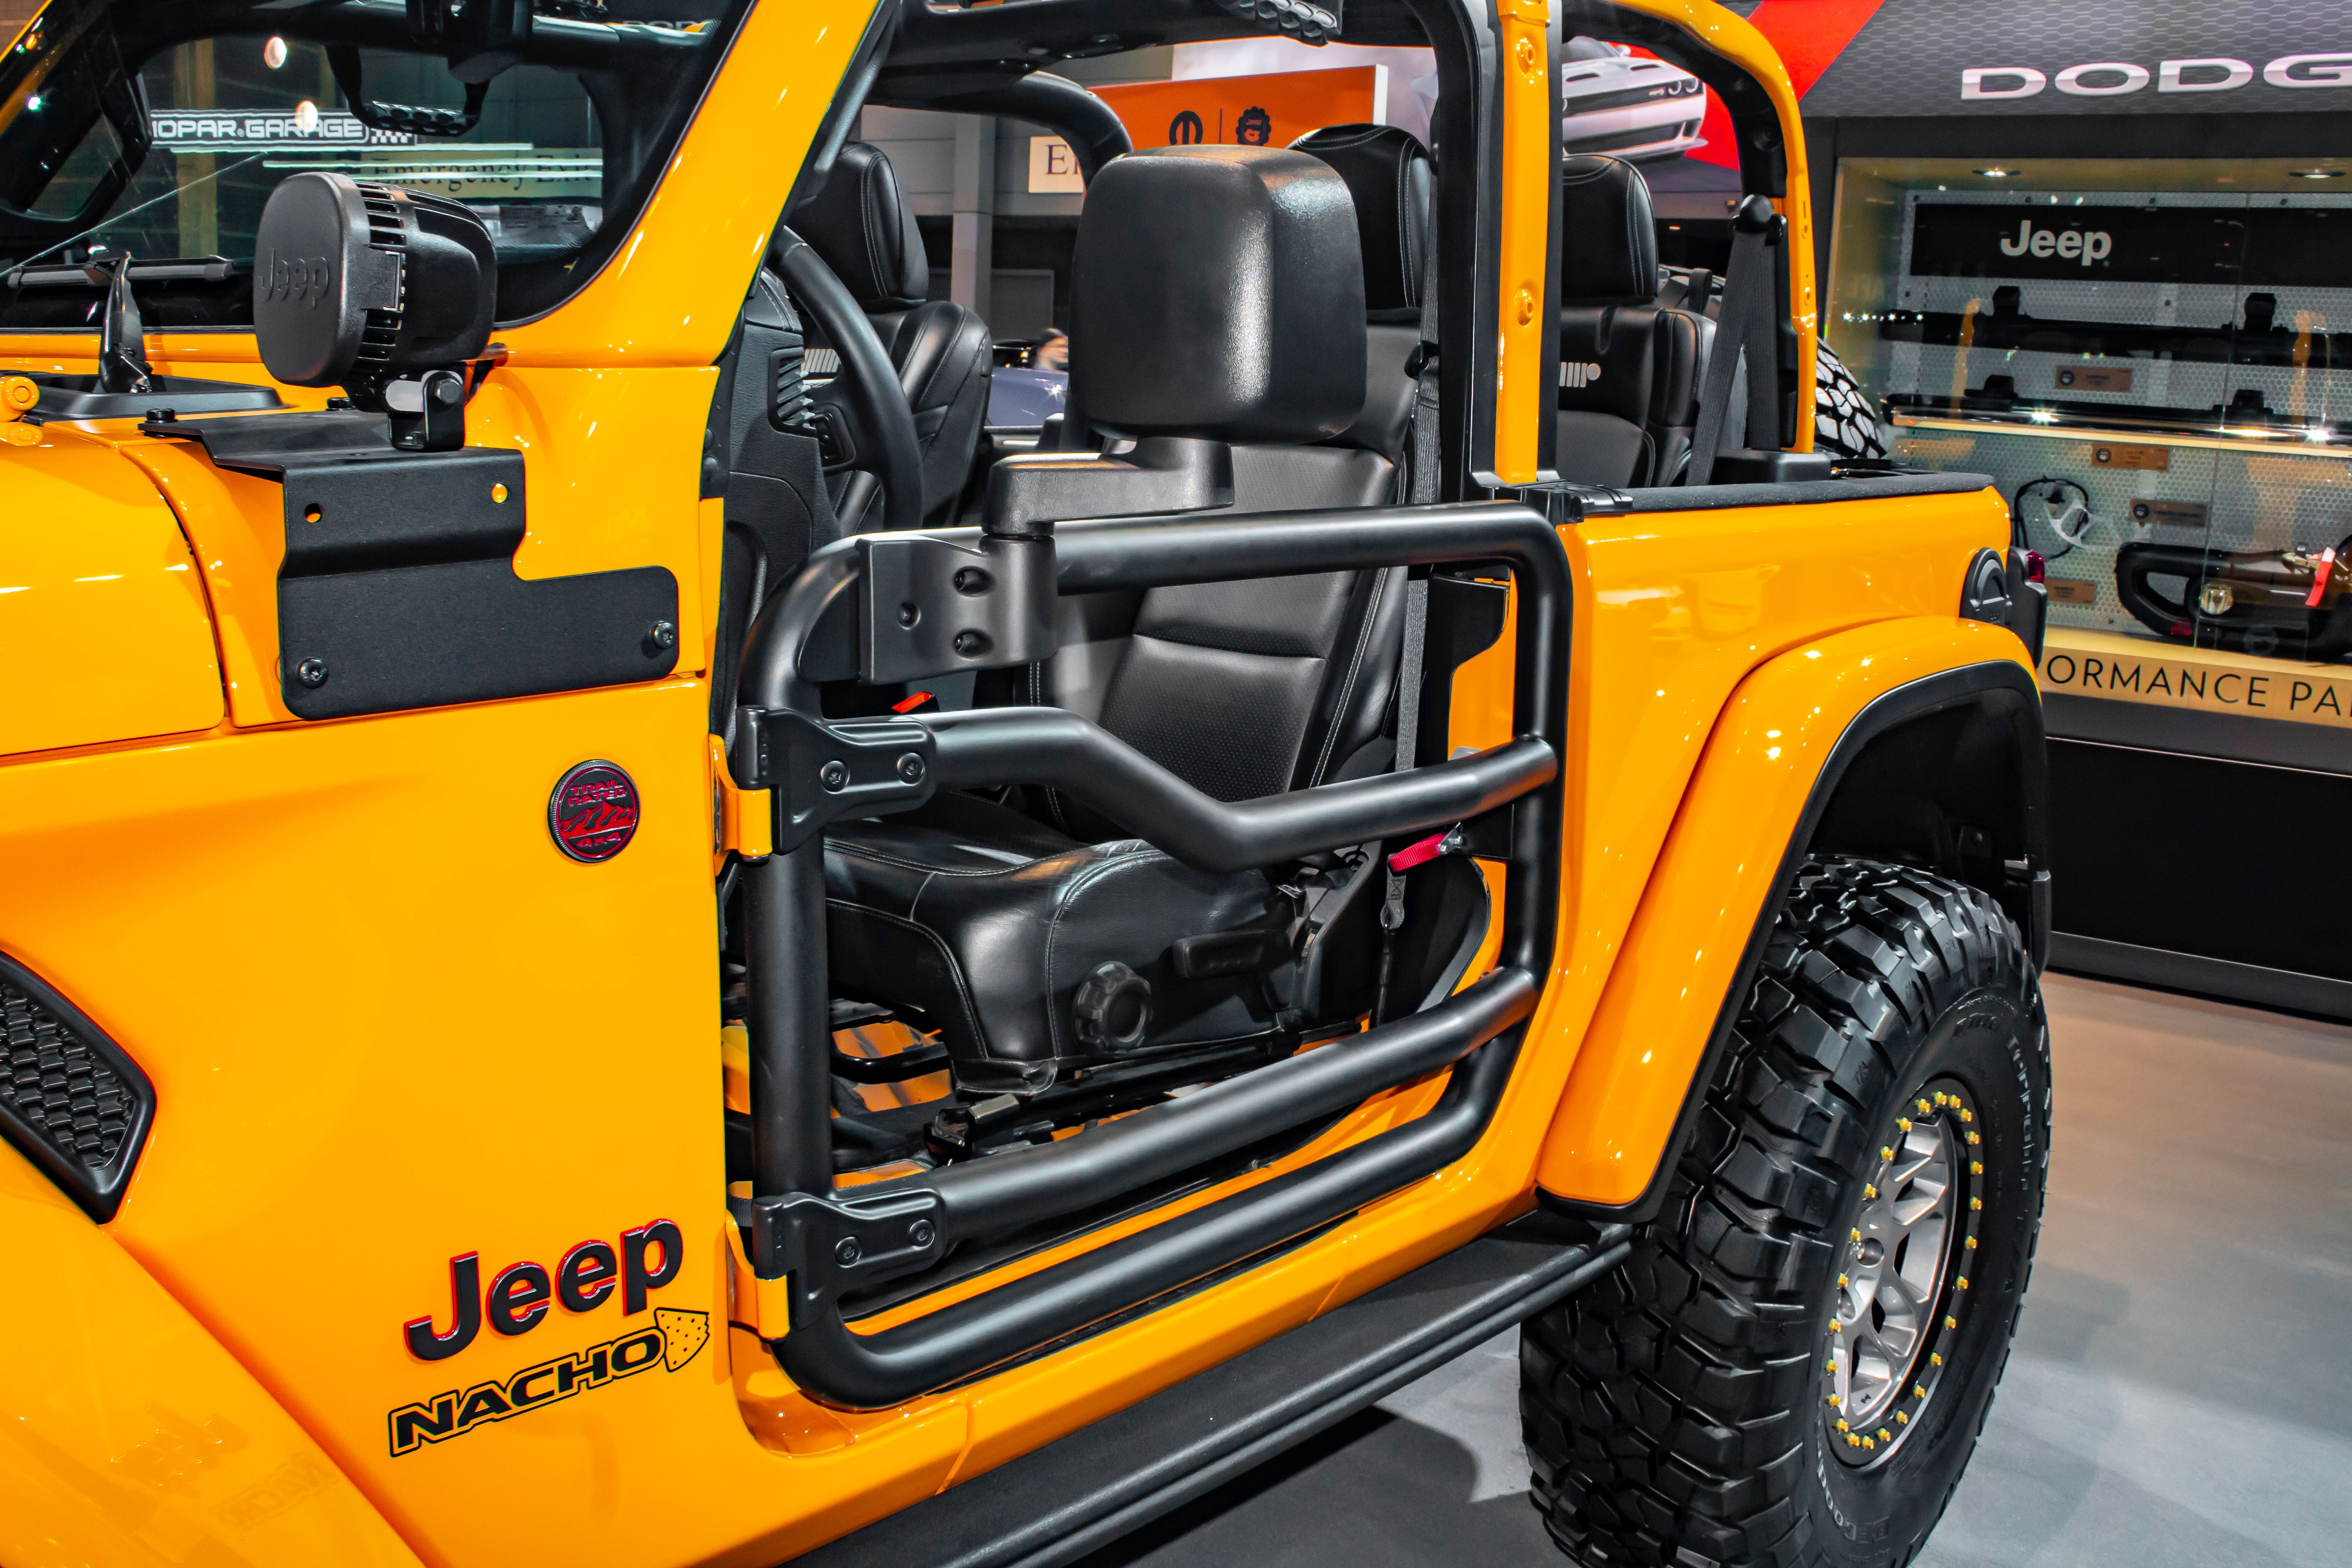 2019 Jeep Wrangler Nacho Concept